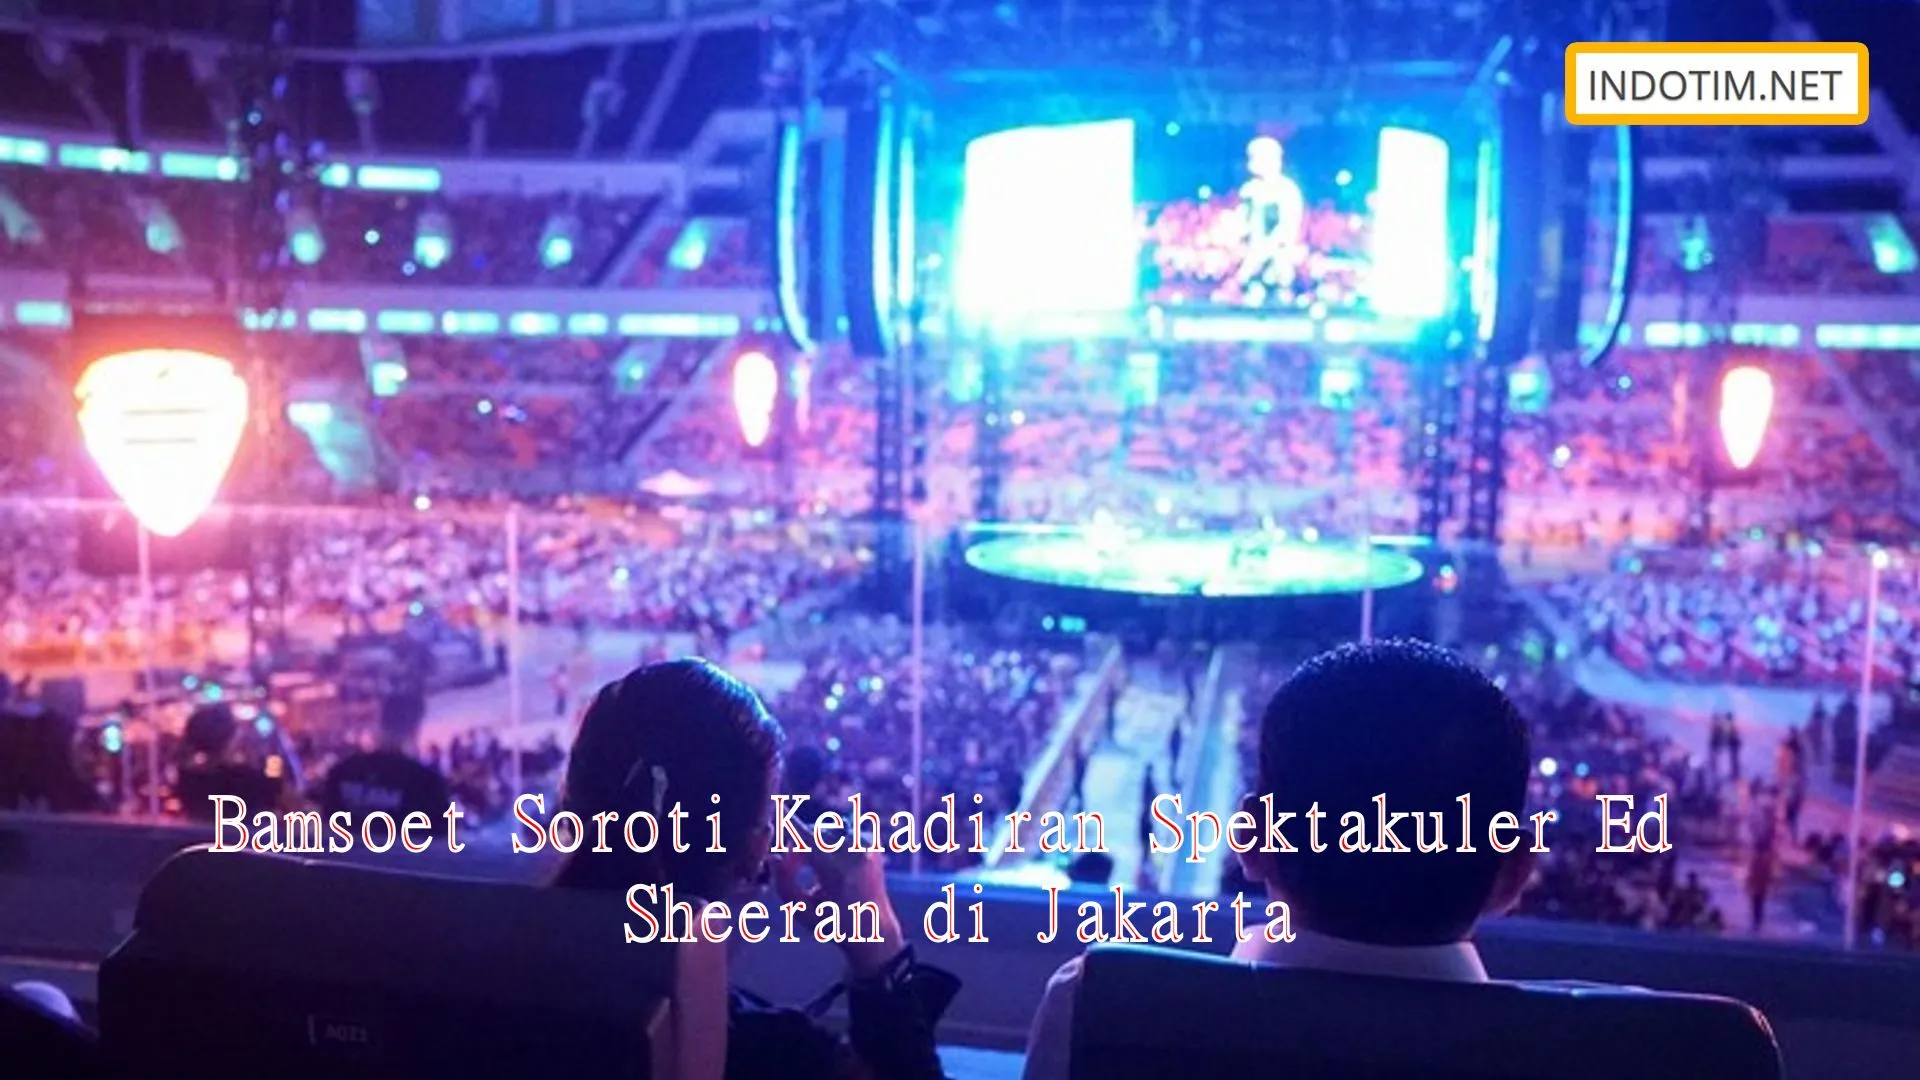 Bamsoet Soroti Kehadiran Spektakuler Ed Sheeran di Jakarta